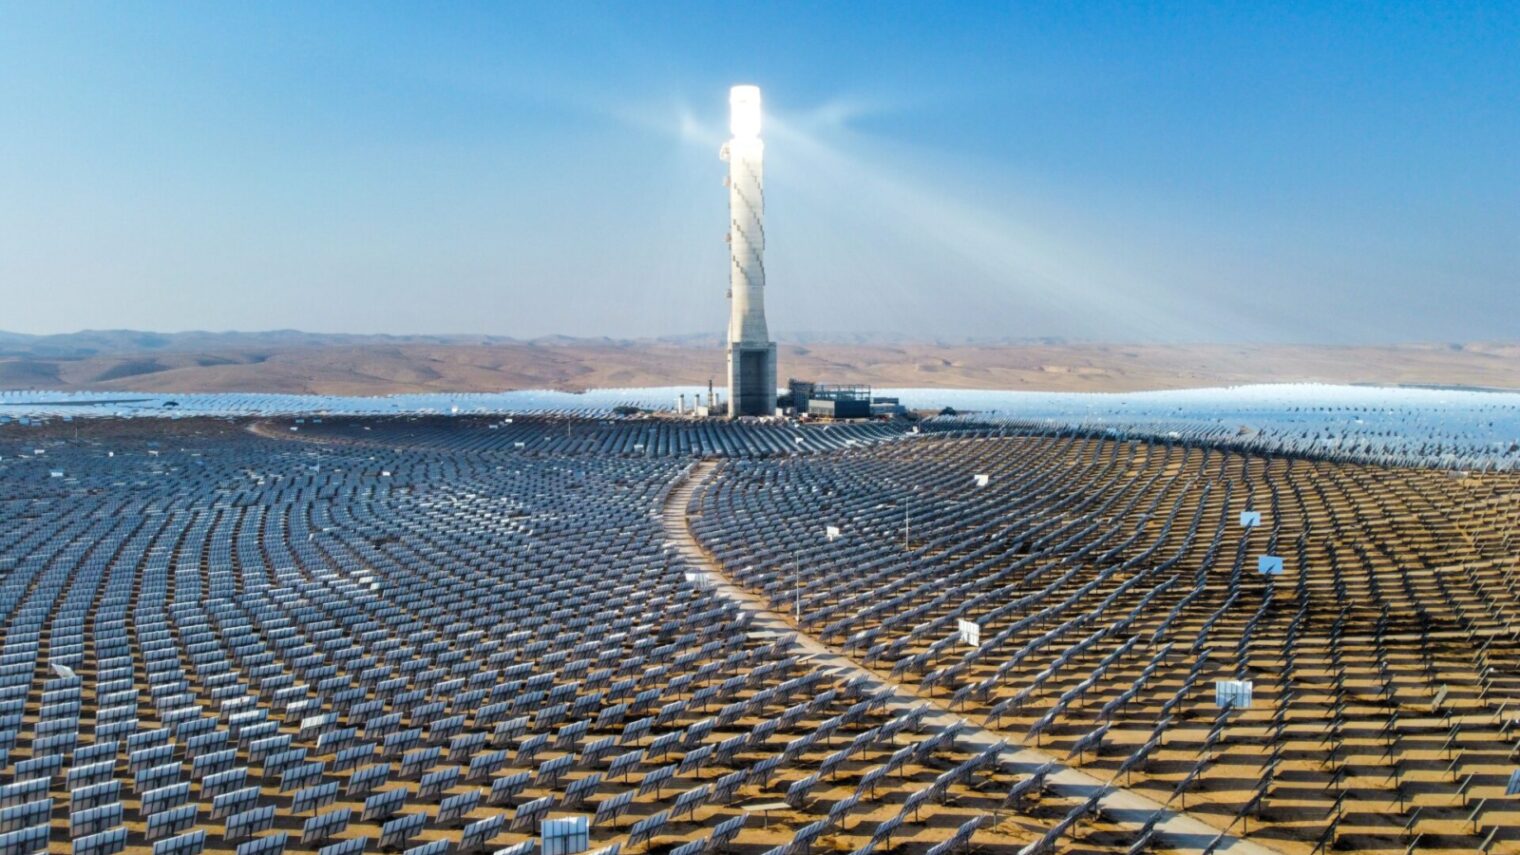 A beacon of light in the desert. Solar electro power station Ashalim in the Negev Desert. Photo courtesy of Shutterstock